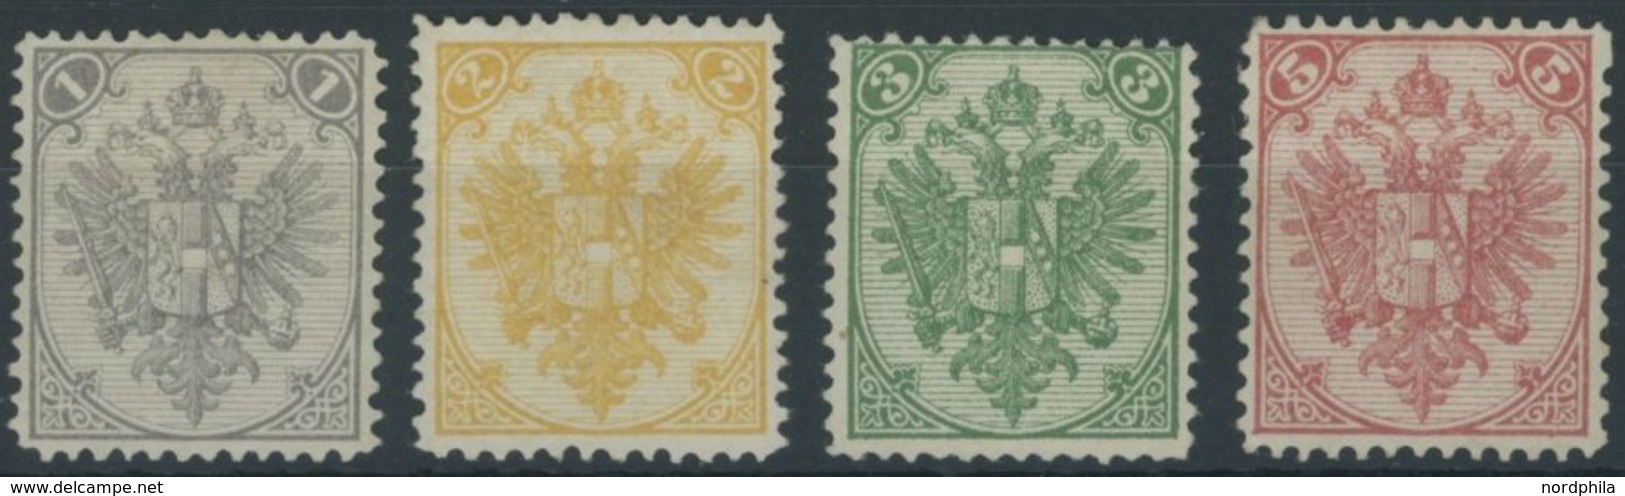 BOSNIEN UND HERZEGOWINA 1-4I *, 1879, 1 - 5 Kr. Steindruck, Falzreste, 4 Prachtwerte, Signiert, Mi. 135.- - Bosnie-Herzegovine